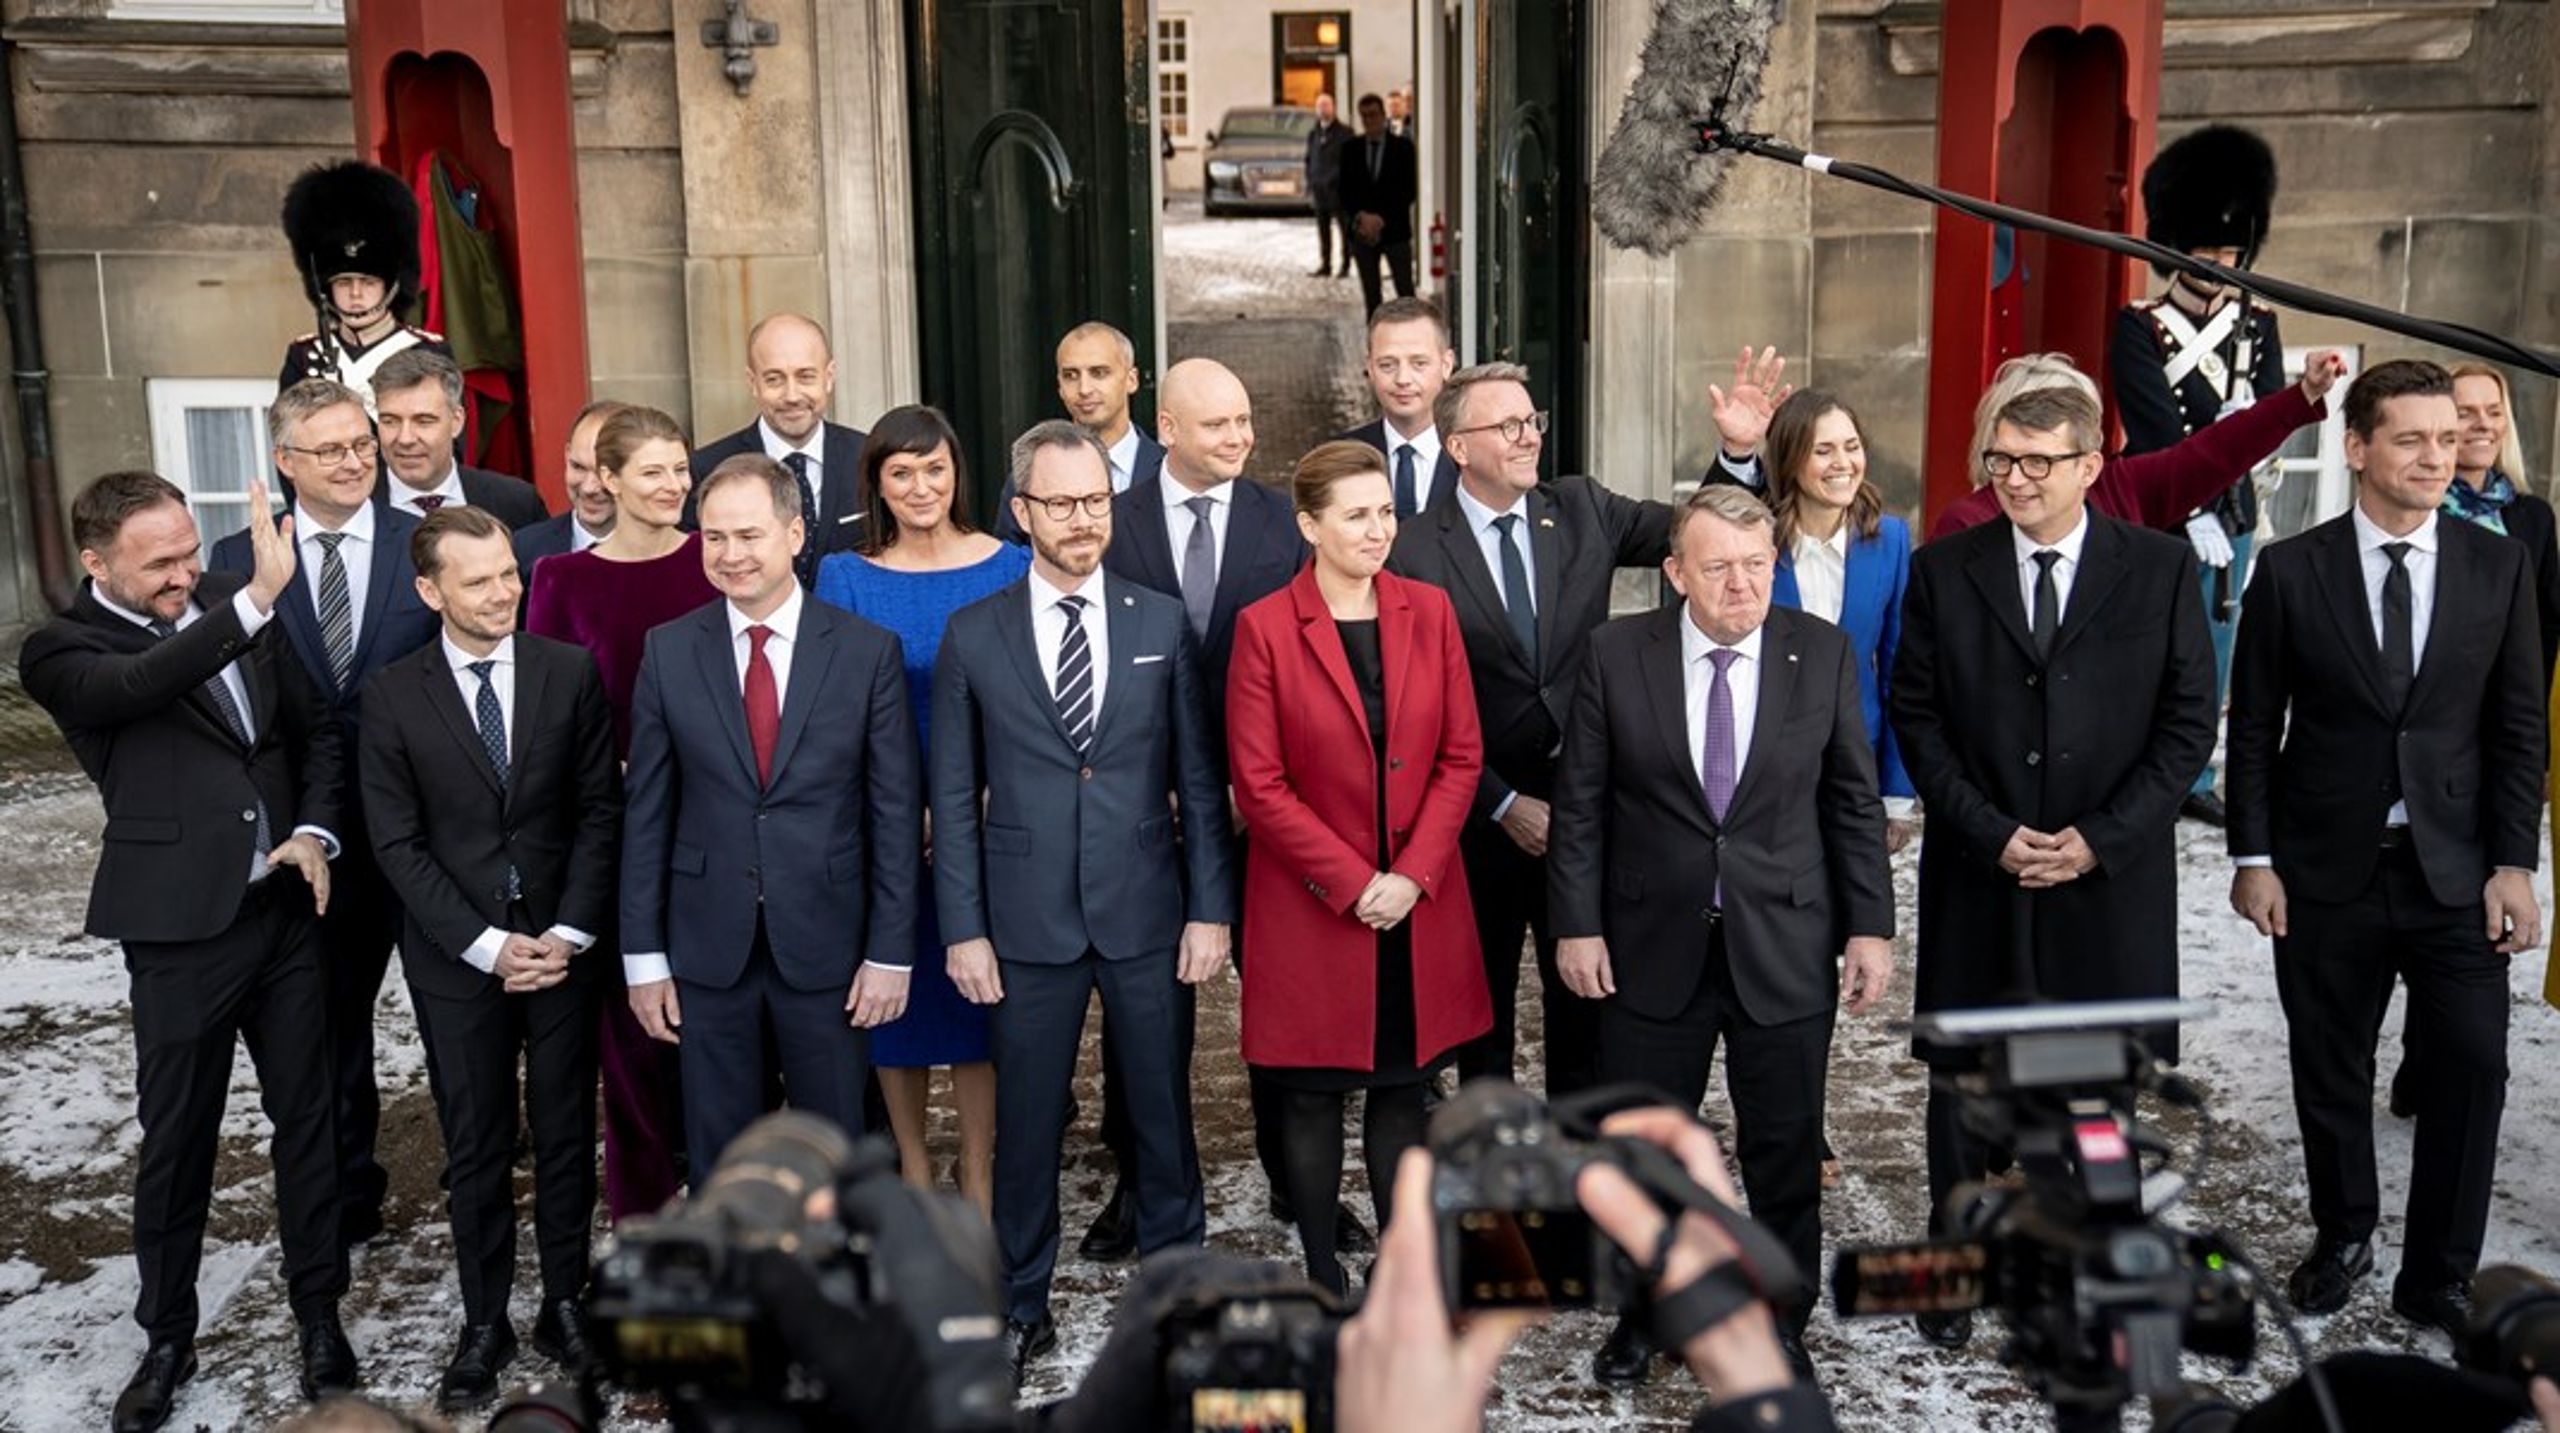 “Vi repræsenterer danskerne som de er flest, det er derfor vi ser sådan ud,” sagde Mette Frederiksen, da hun præsenterede sin nye regering foran Amalienborg. Men kun omkring otte ud af de 23 ministre i den nye SVM-regering&nbsp;er kvinder.